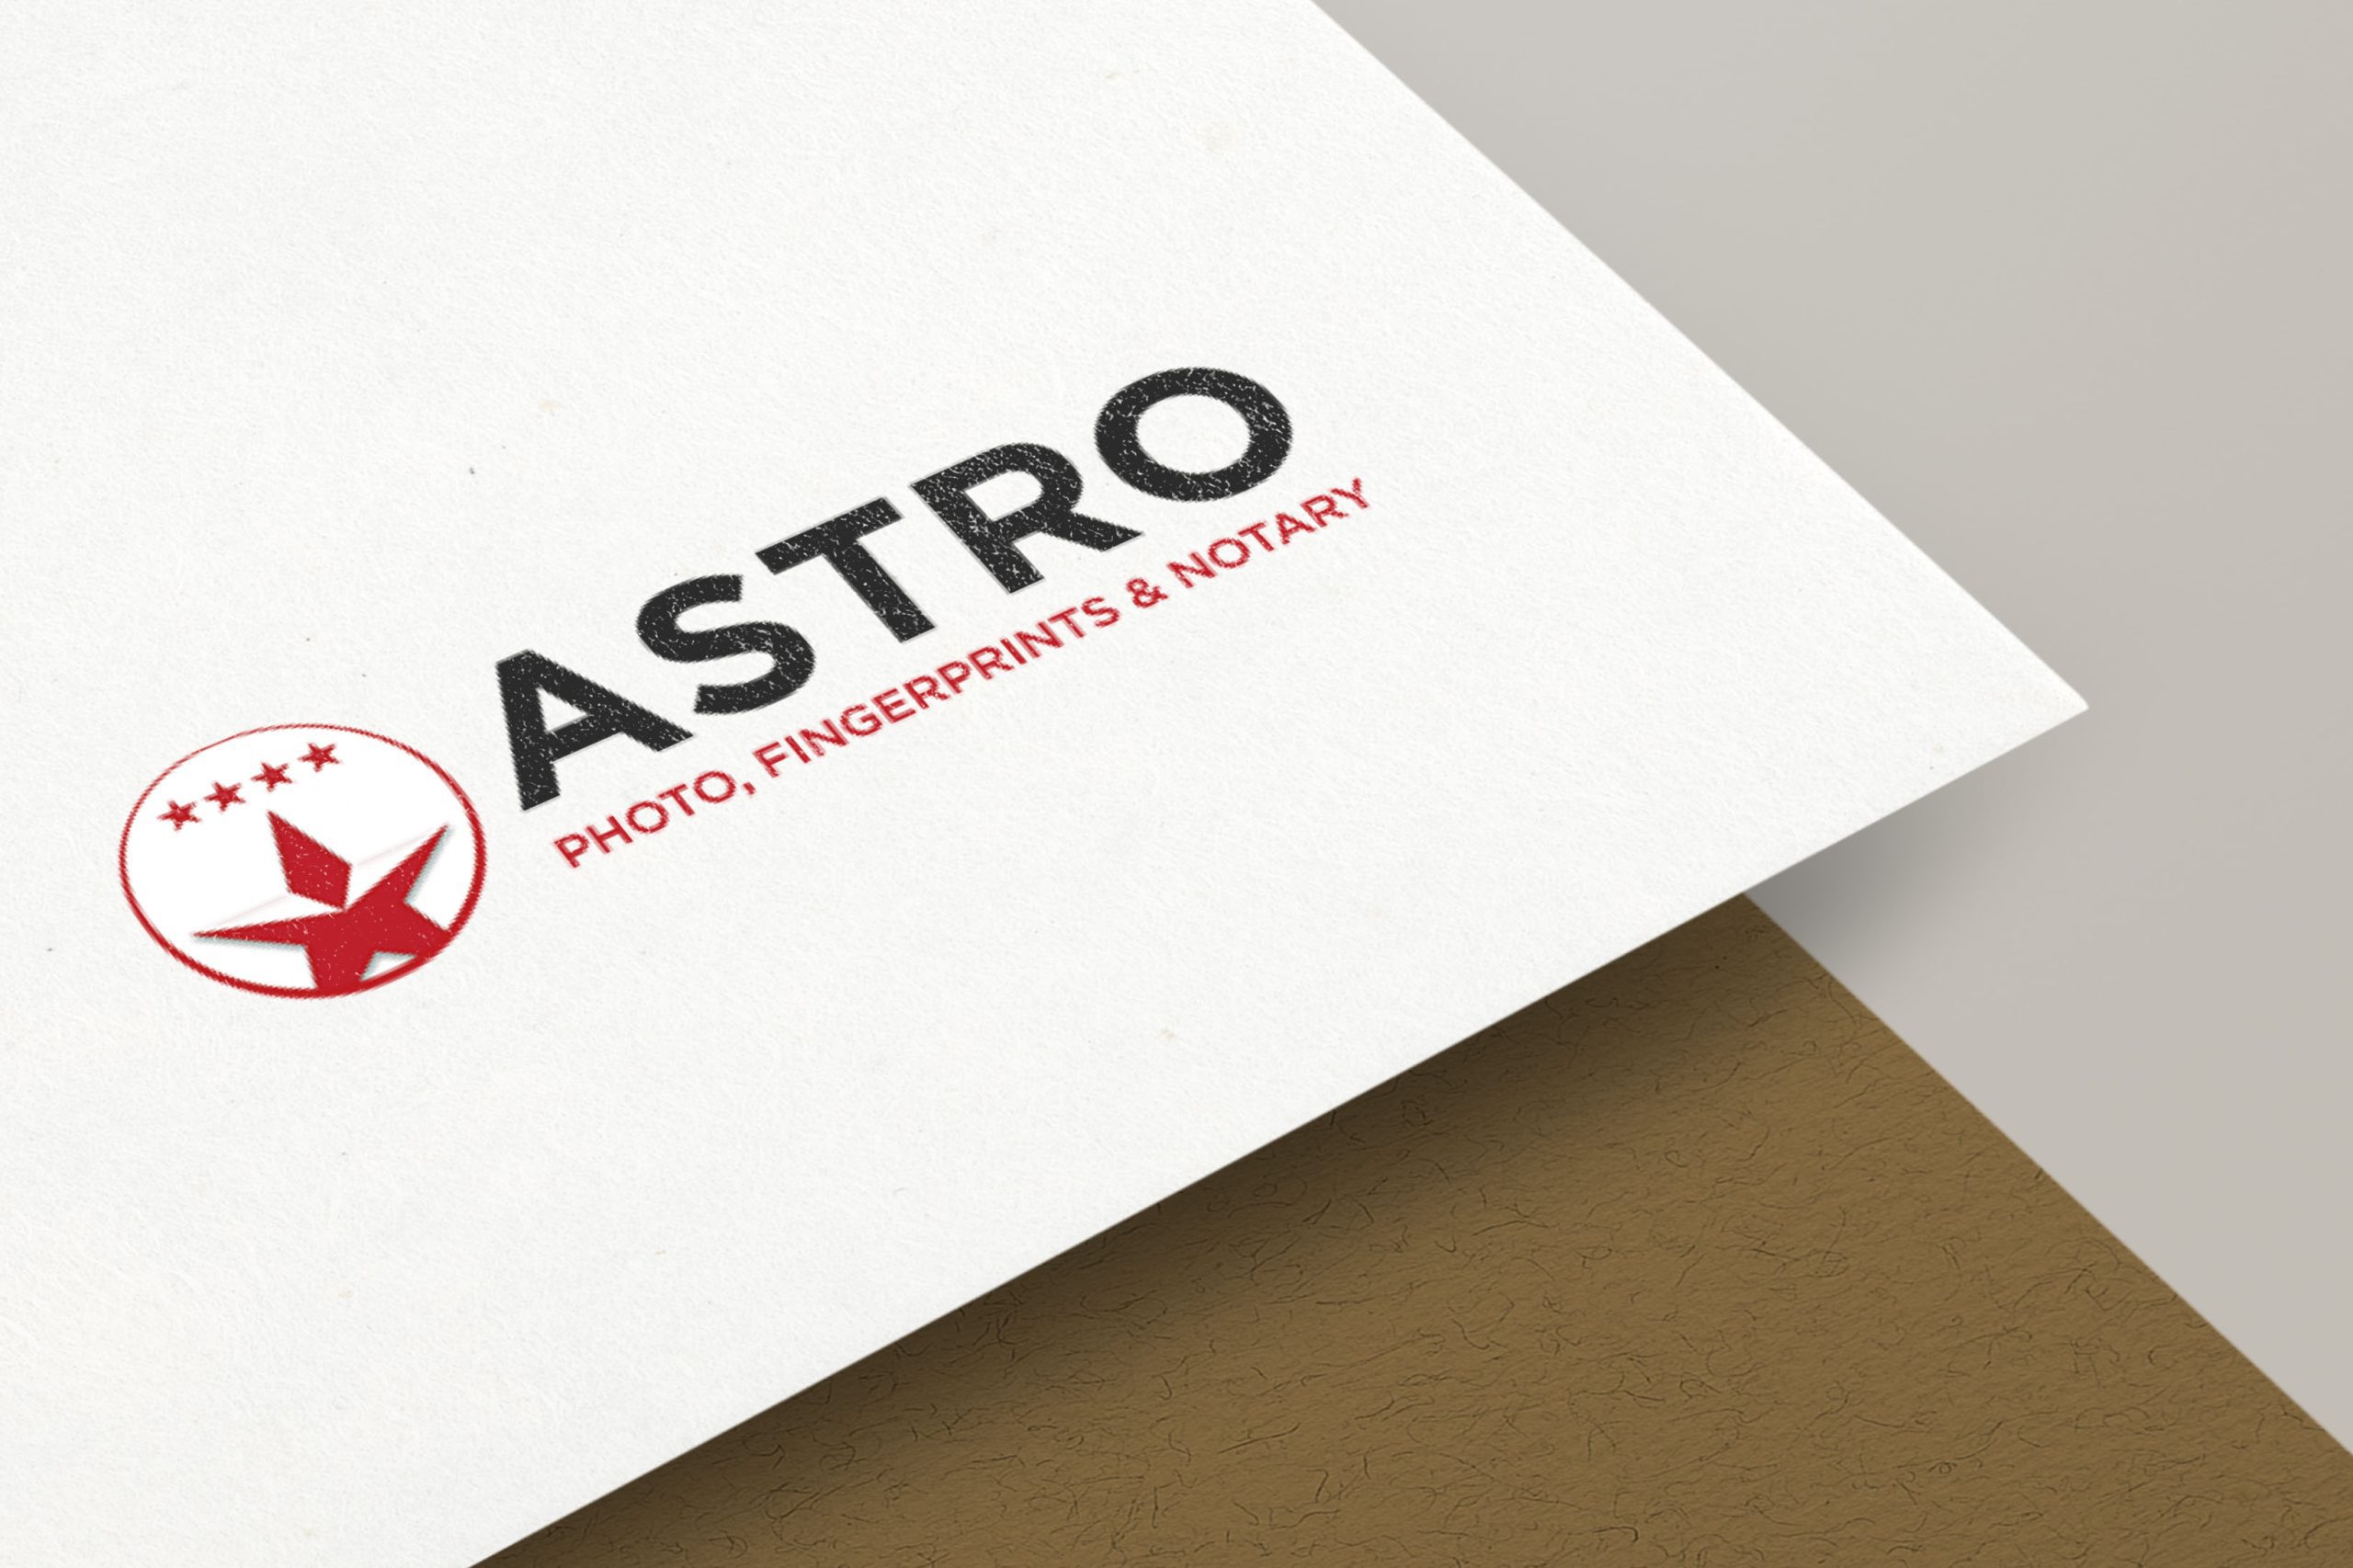 Astro - Photo, Fingerprint & Notary